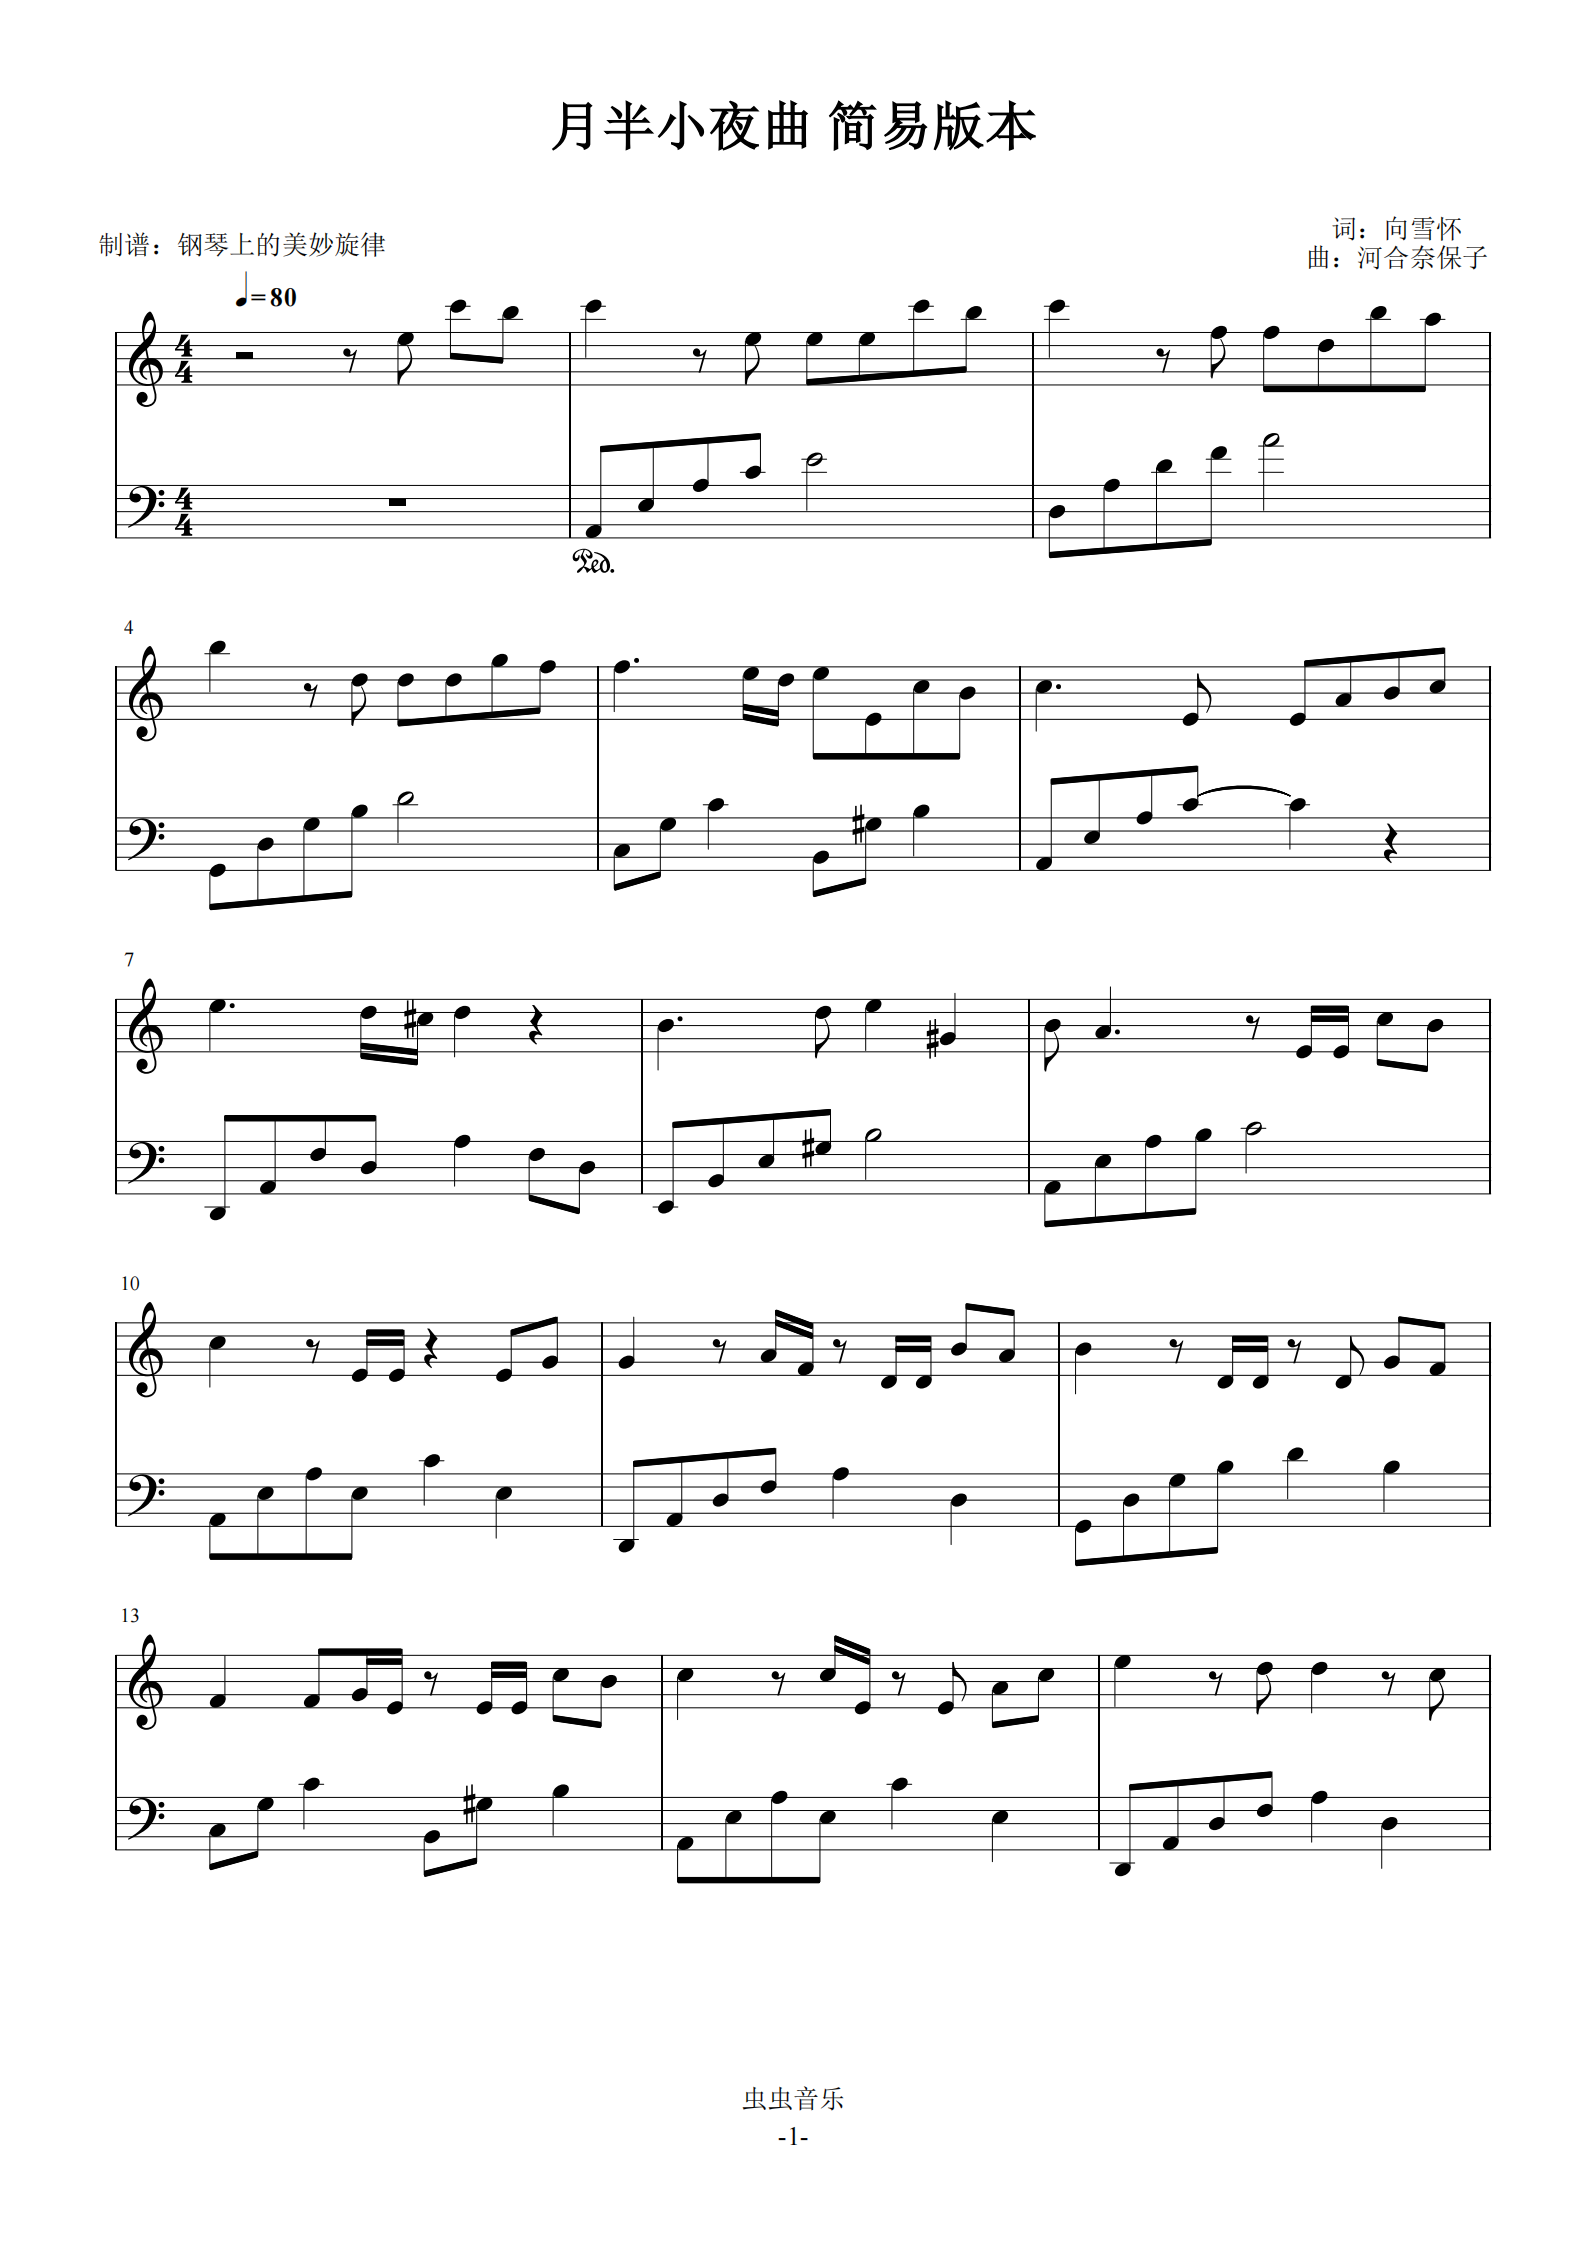 钢琴谱:月半小夜曲 c调简易版 容易弹